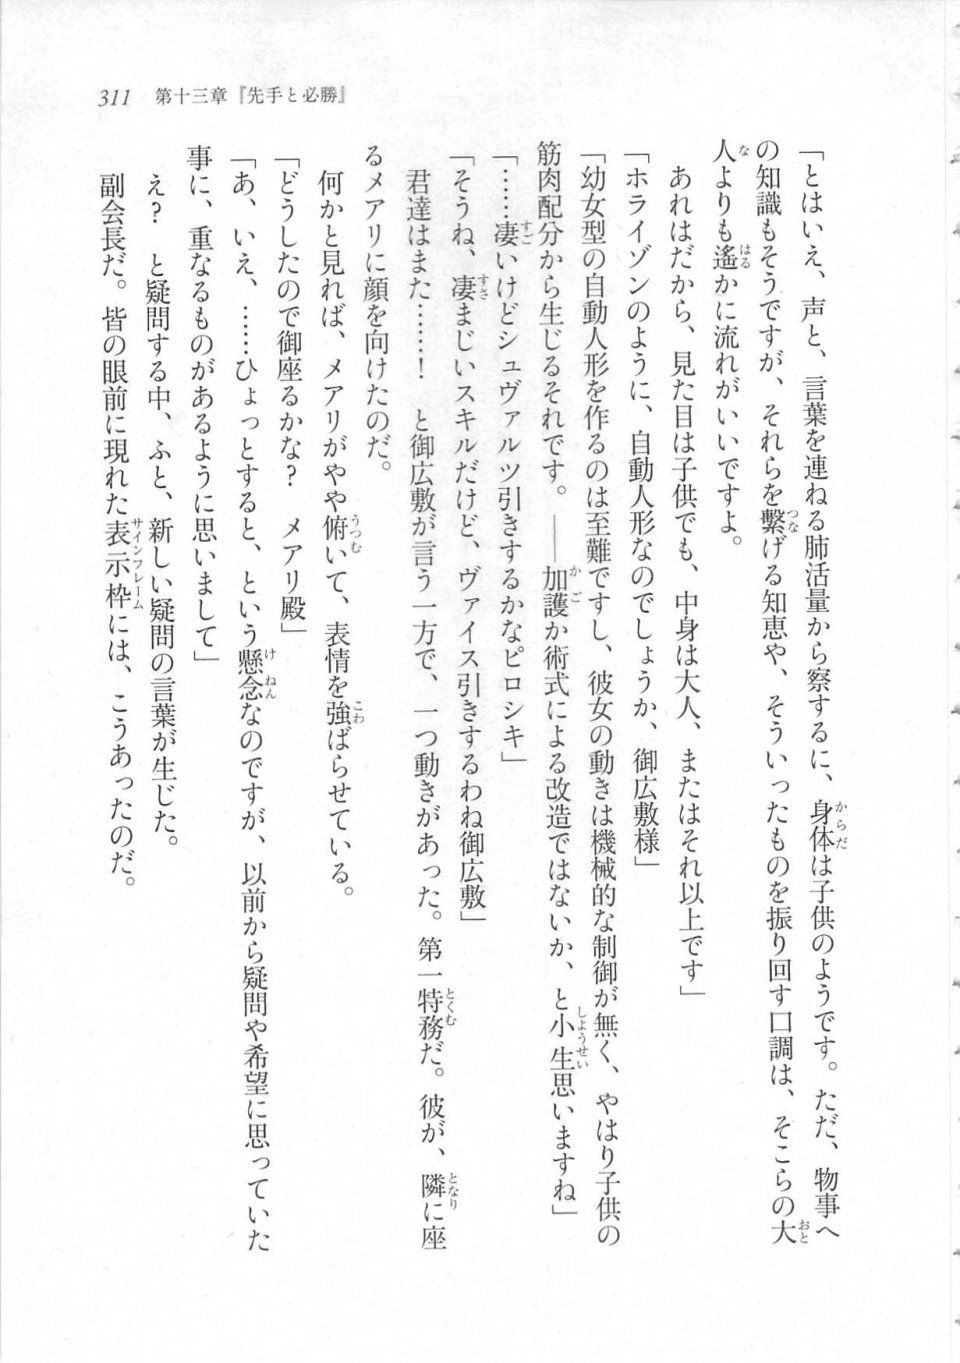 Kyoukai Senjou no Horizon LN Sidestory Vol 3 - Photo #315